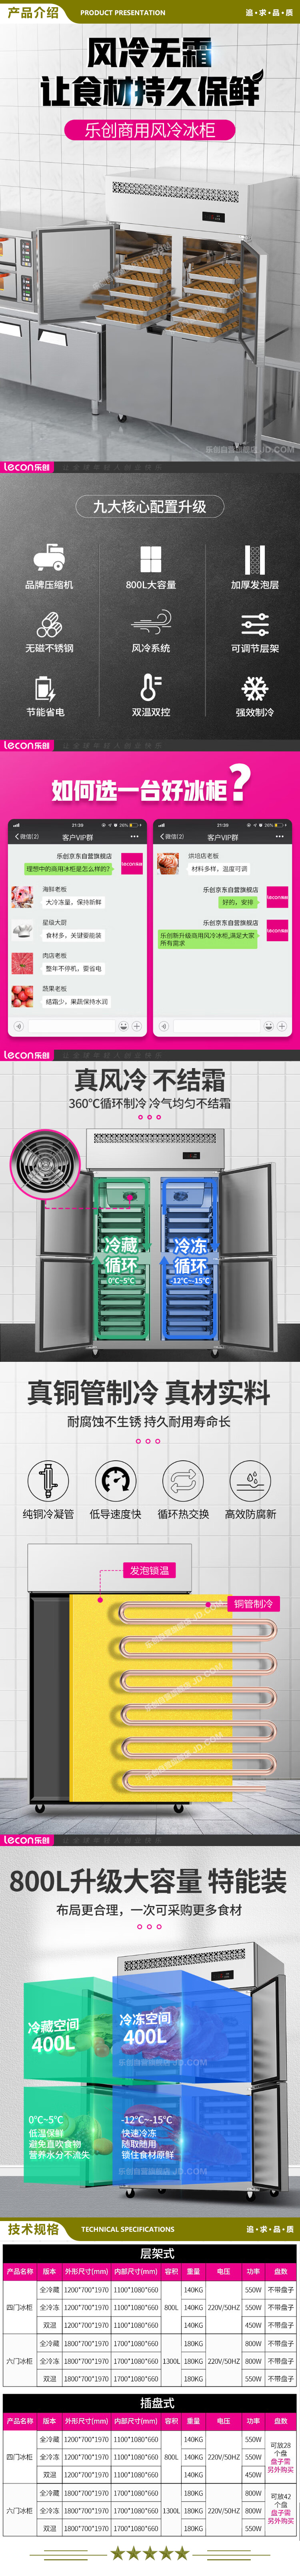 乐创(lecon) LC-SMBG01 双温商用四门冰柜厨房冰箱双温冷藏冷冻餐饮立式后厨保鲜柜冷柜风冷层架式  2.jpg